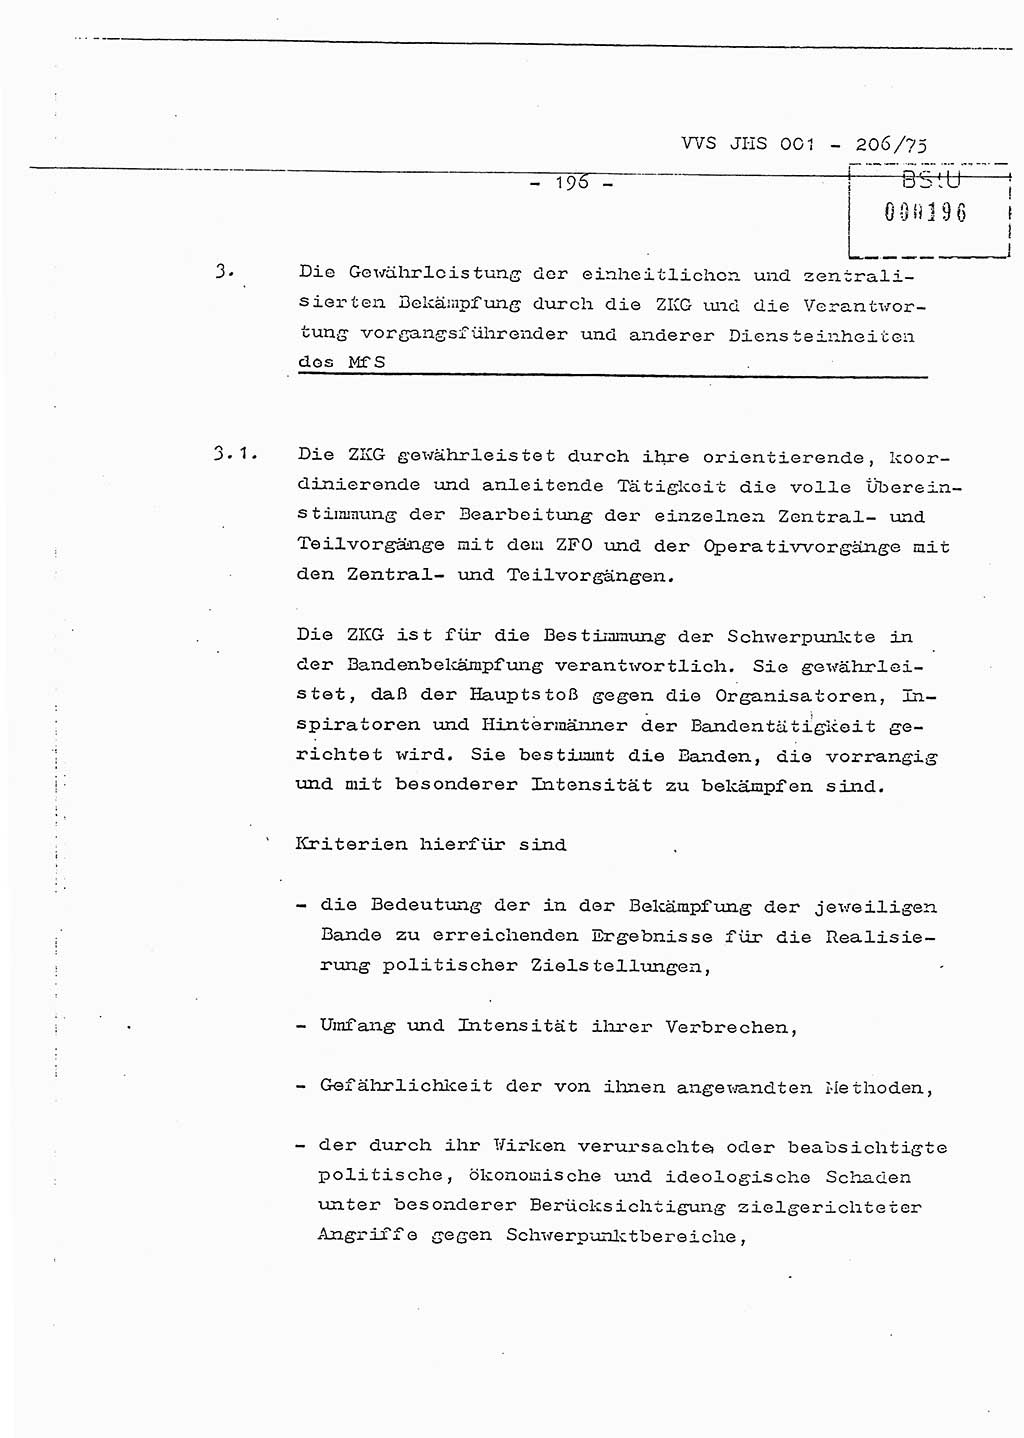 Dissertation Generalmajor Manfred Hummitzsch (Leiter der BV Leipzig), Generalmajor Heinz Fiedler (HA Ⅵ), Oberst Rolf Fister (HA Ⅸ), Ministerium für Staatssicherheit (MfS) [Deutsche Demokratische Republik (DDR)], Juristische Hochschule (JHS), Vertrauliche Verschlußsache (VVS) 001-206/75, Potsdam 1975, Seite 196 (Diss. MfS DDR JHS VVS 001-206/75 1975, S. 196)